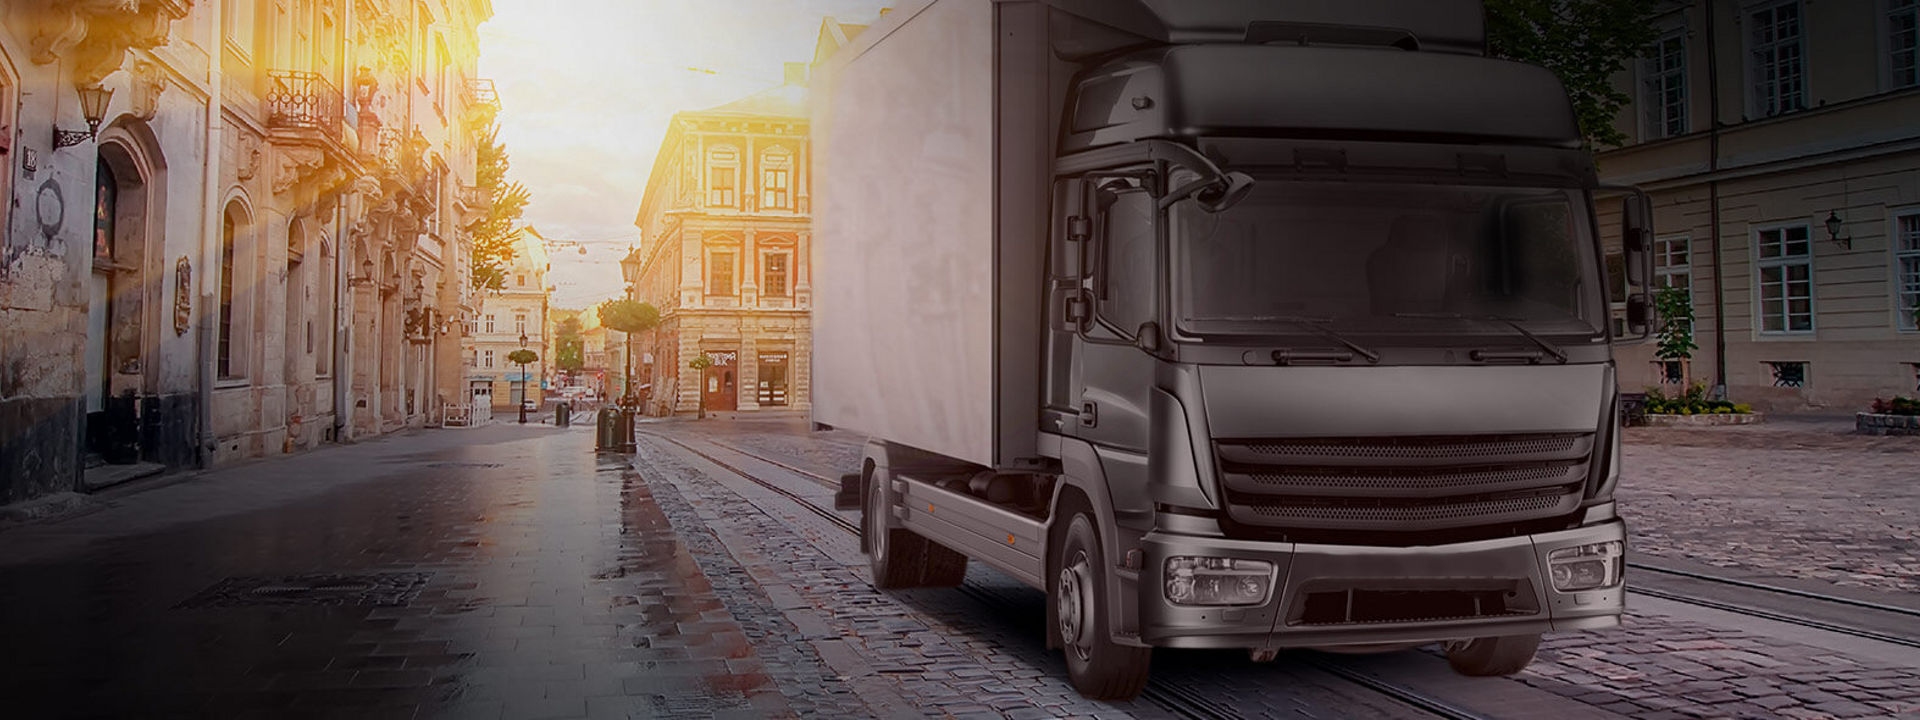 Esta imagem é a de um camião com pneus Bridgestone para camiões leves e médios para entregar mercadorias no meio de uma cidade.